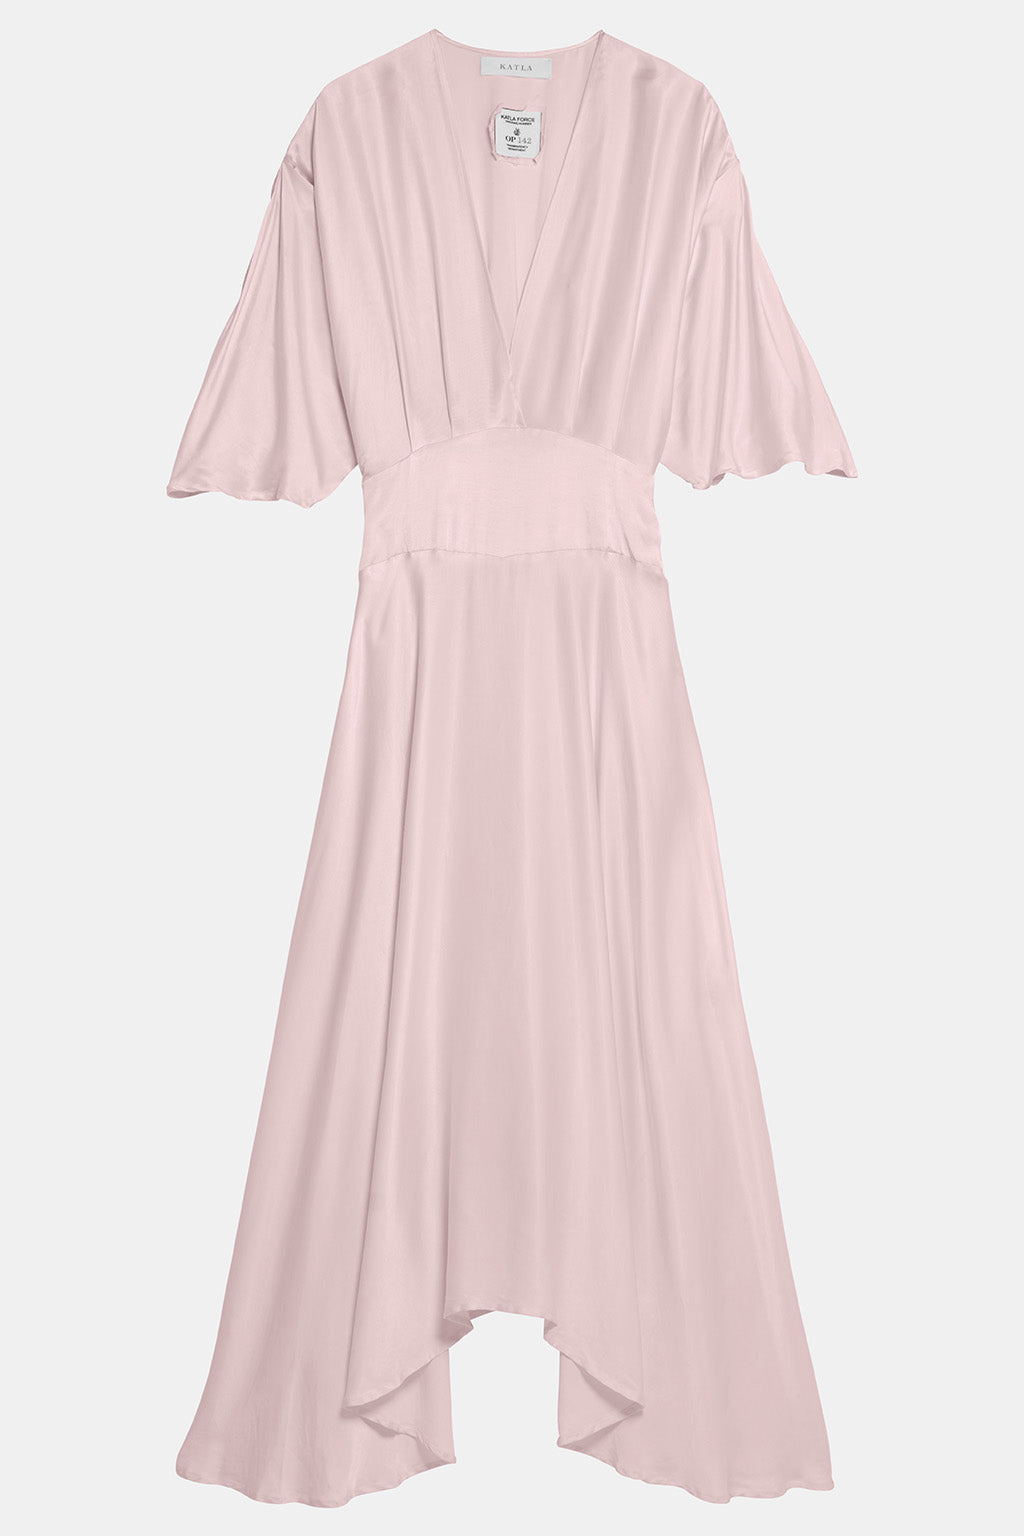 pink flowy dress